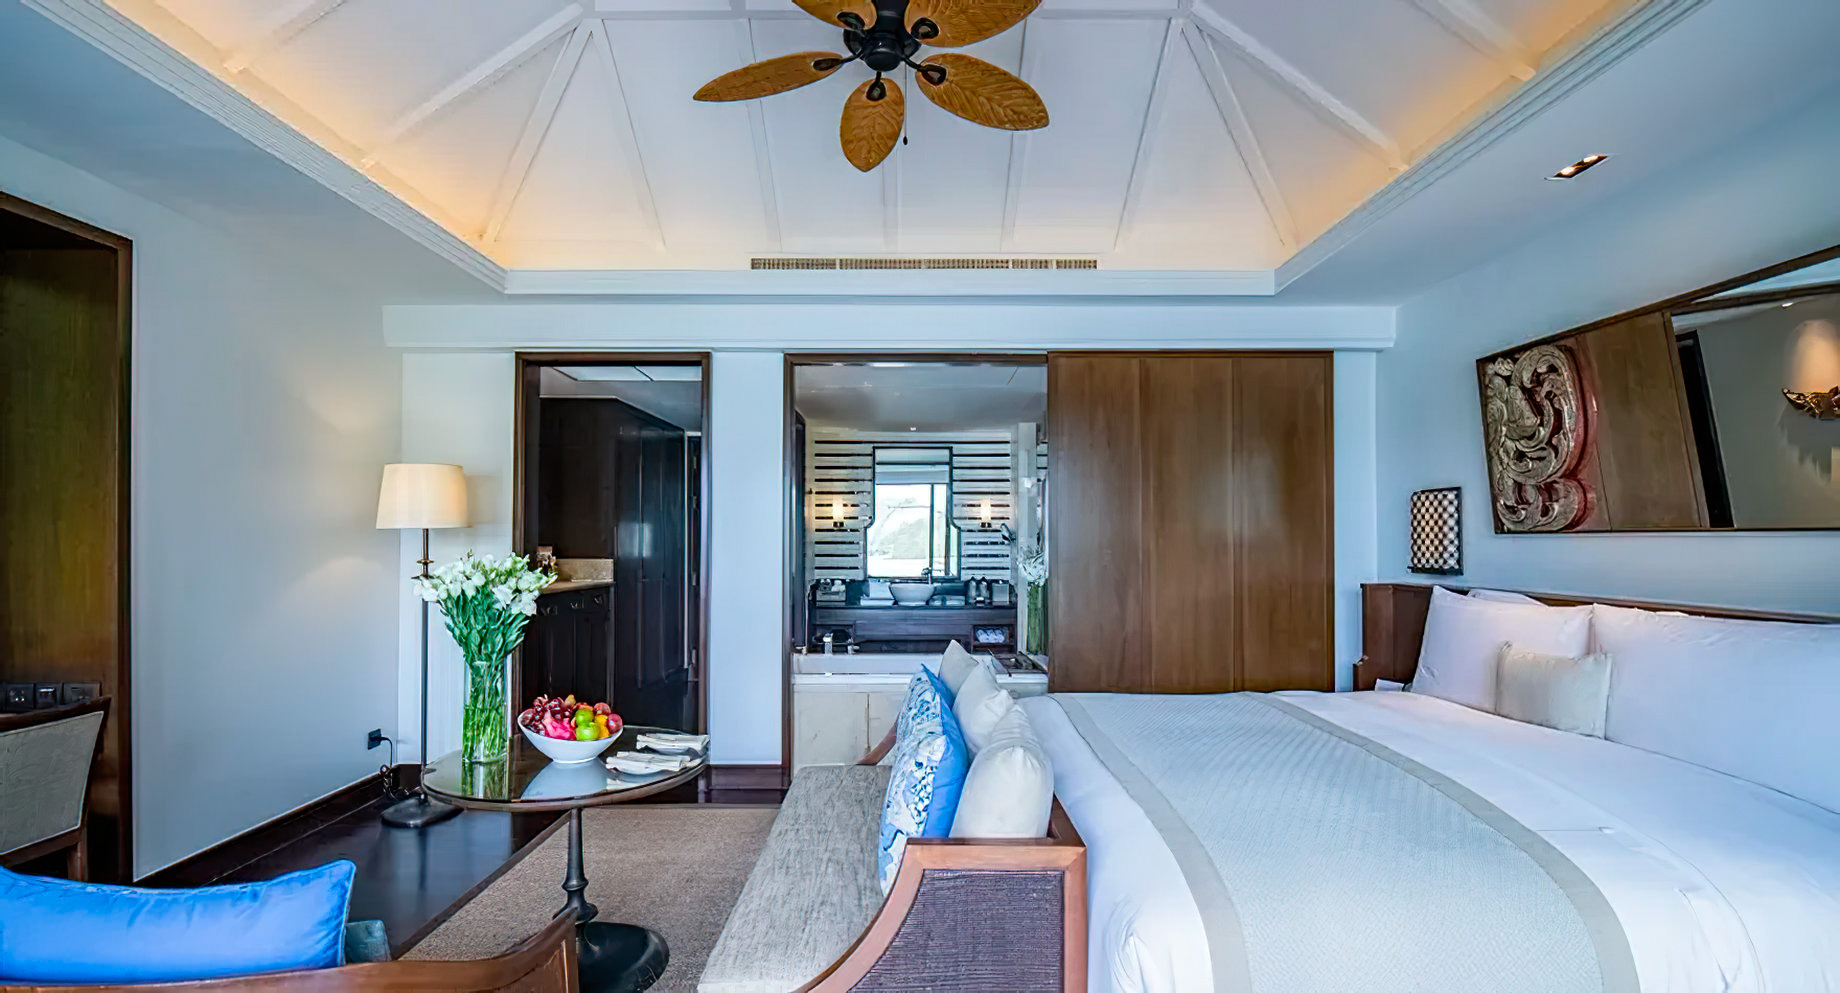 Anantara Layan Phuket Resort & Residences - Thailand - Two Bedroom Pool Suite